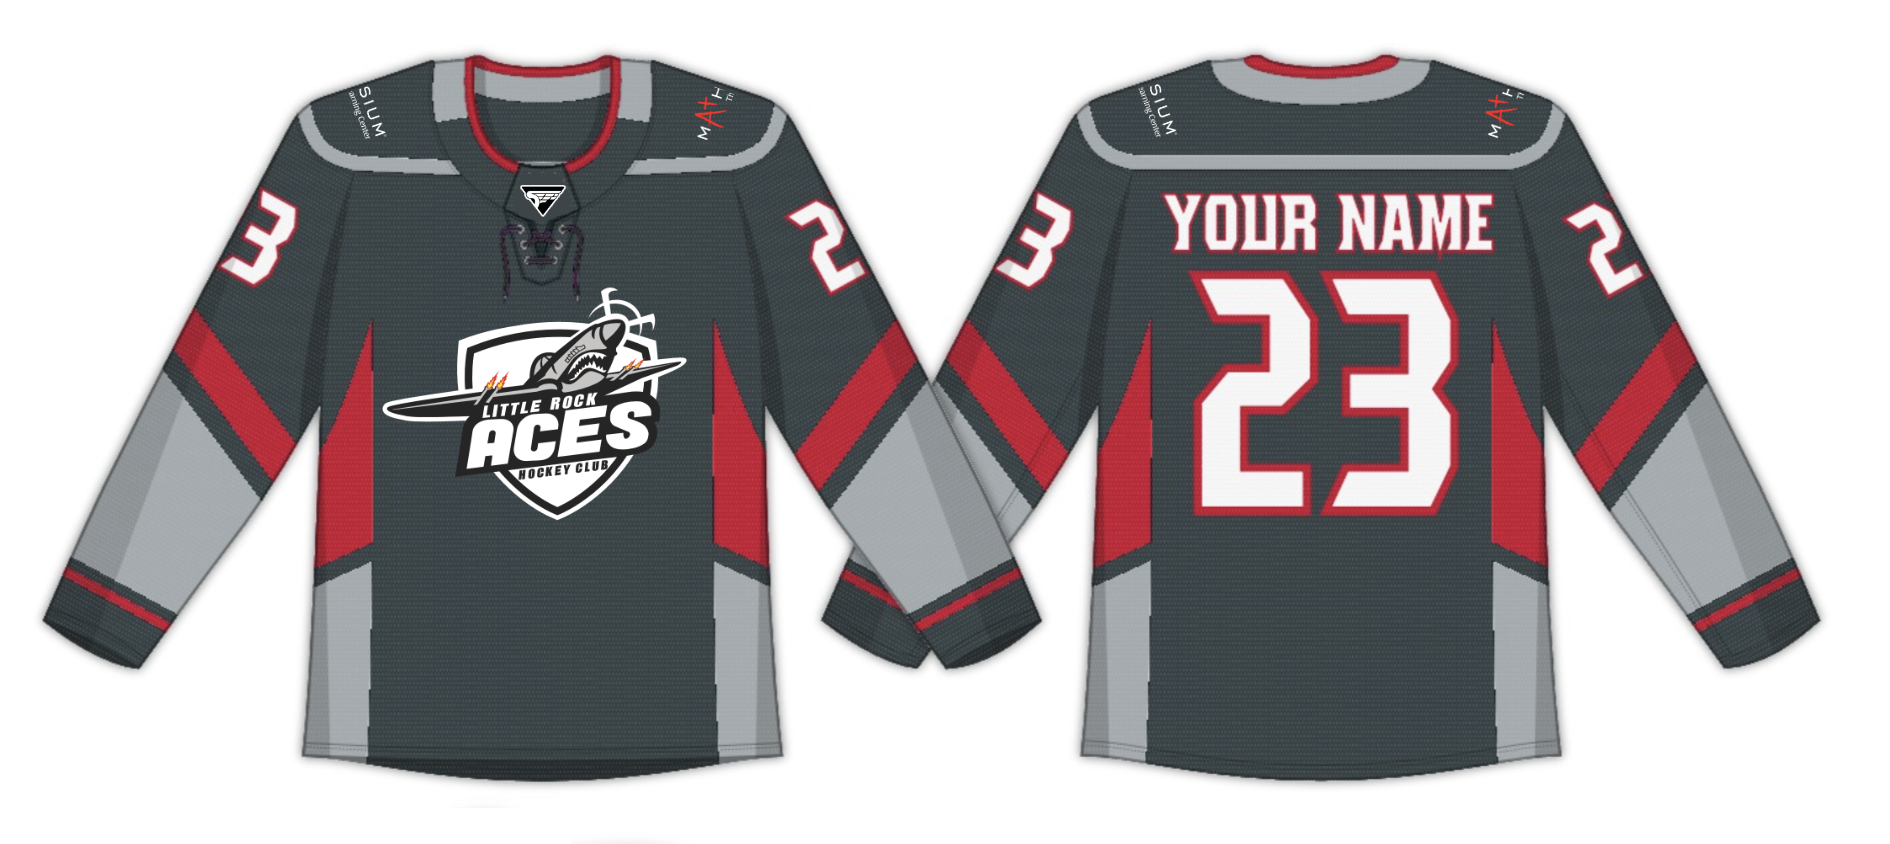 Charcoal Gray Long Sleeve Hockey Jersey